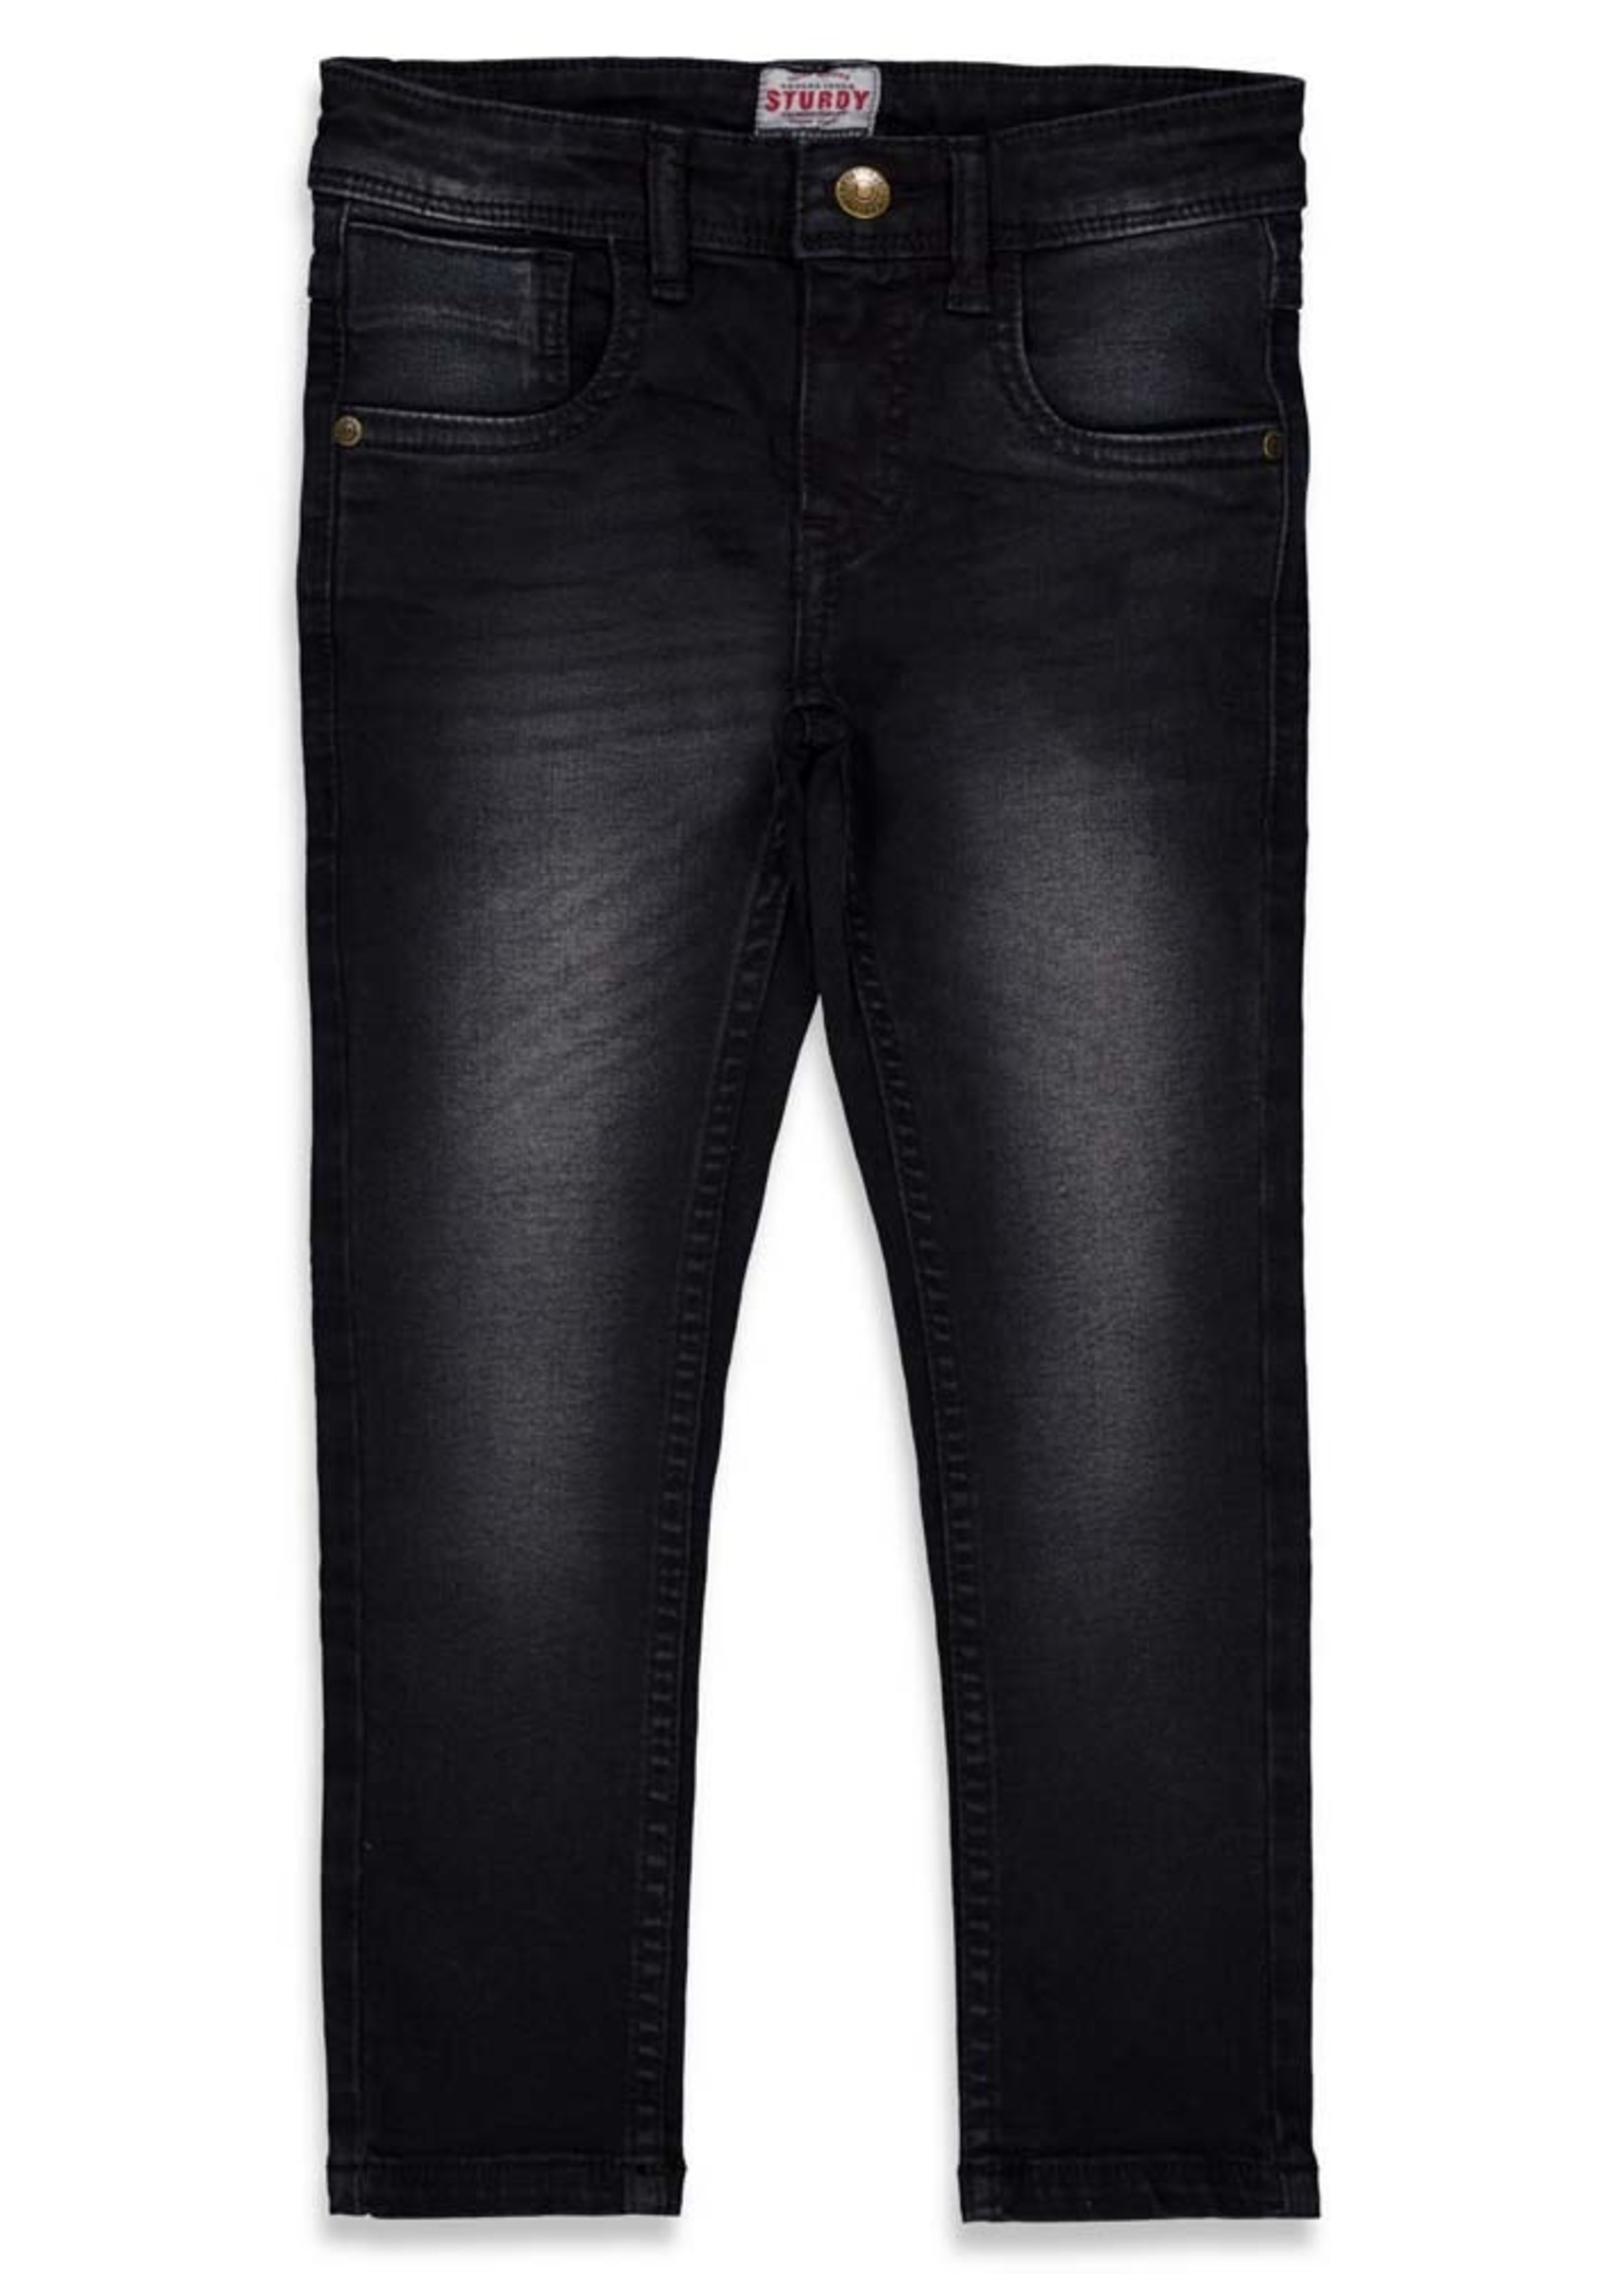 Sturdy Slim fit jeans - Sturdy Denim, Black Denim